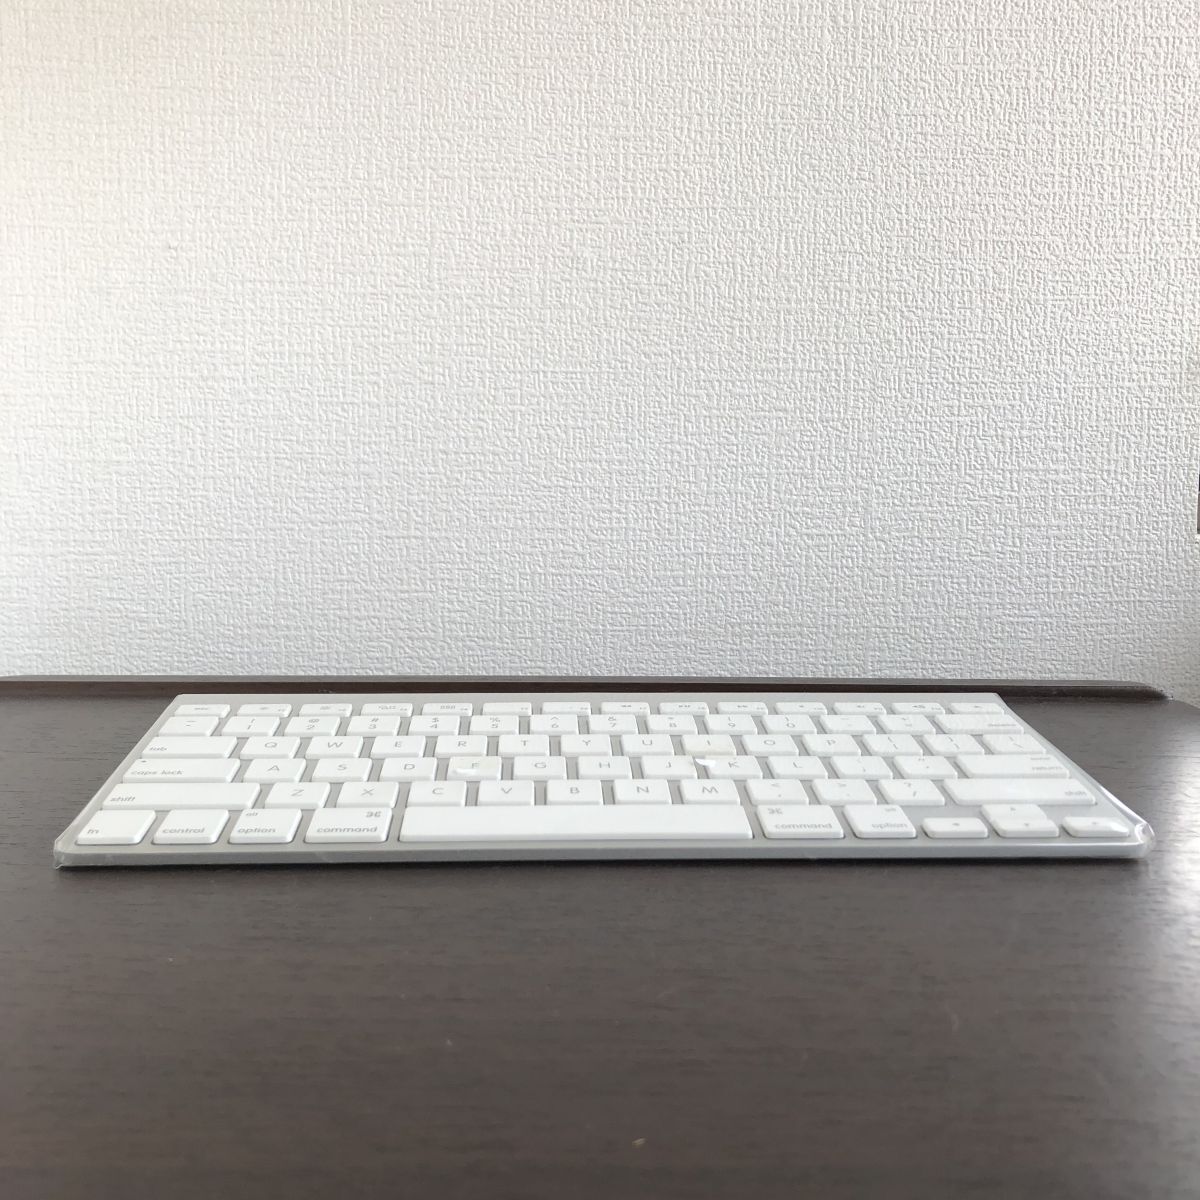 ▲動作OK Apple Keyboard 日本語 USBキーボード A1243 純正 /43-52の画像8